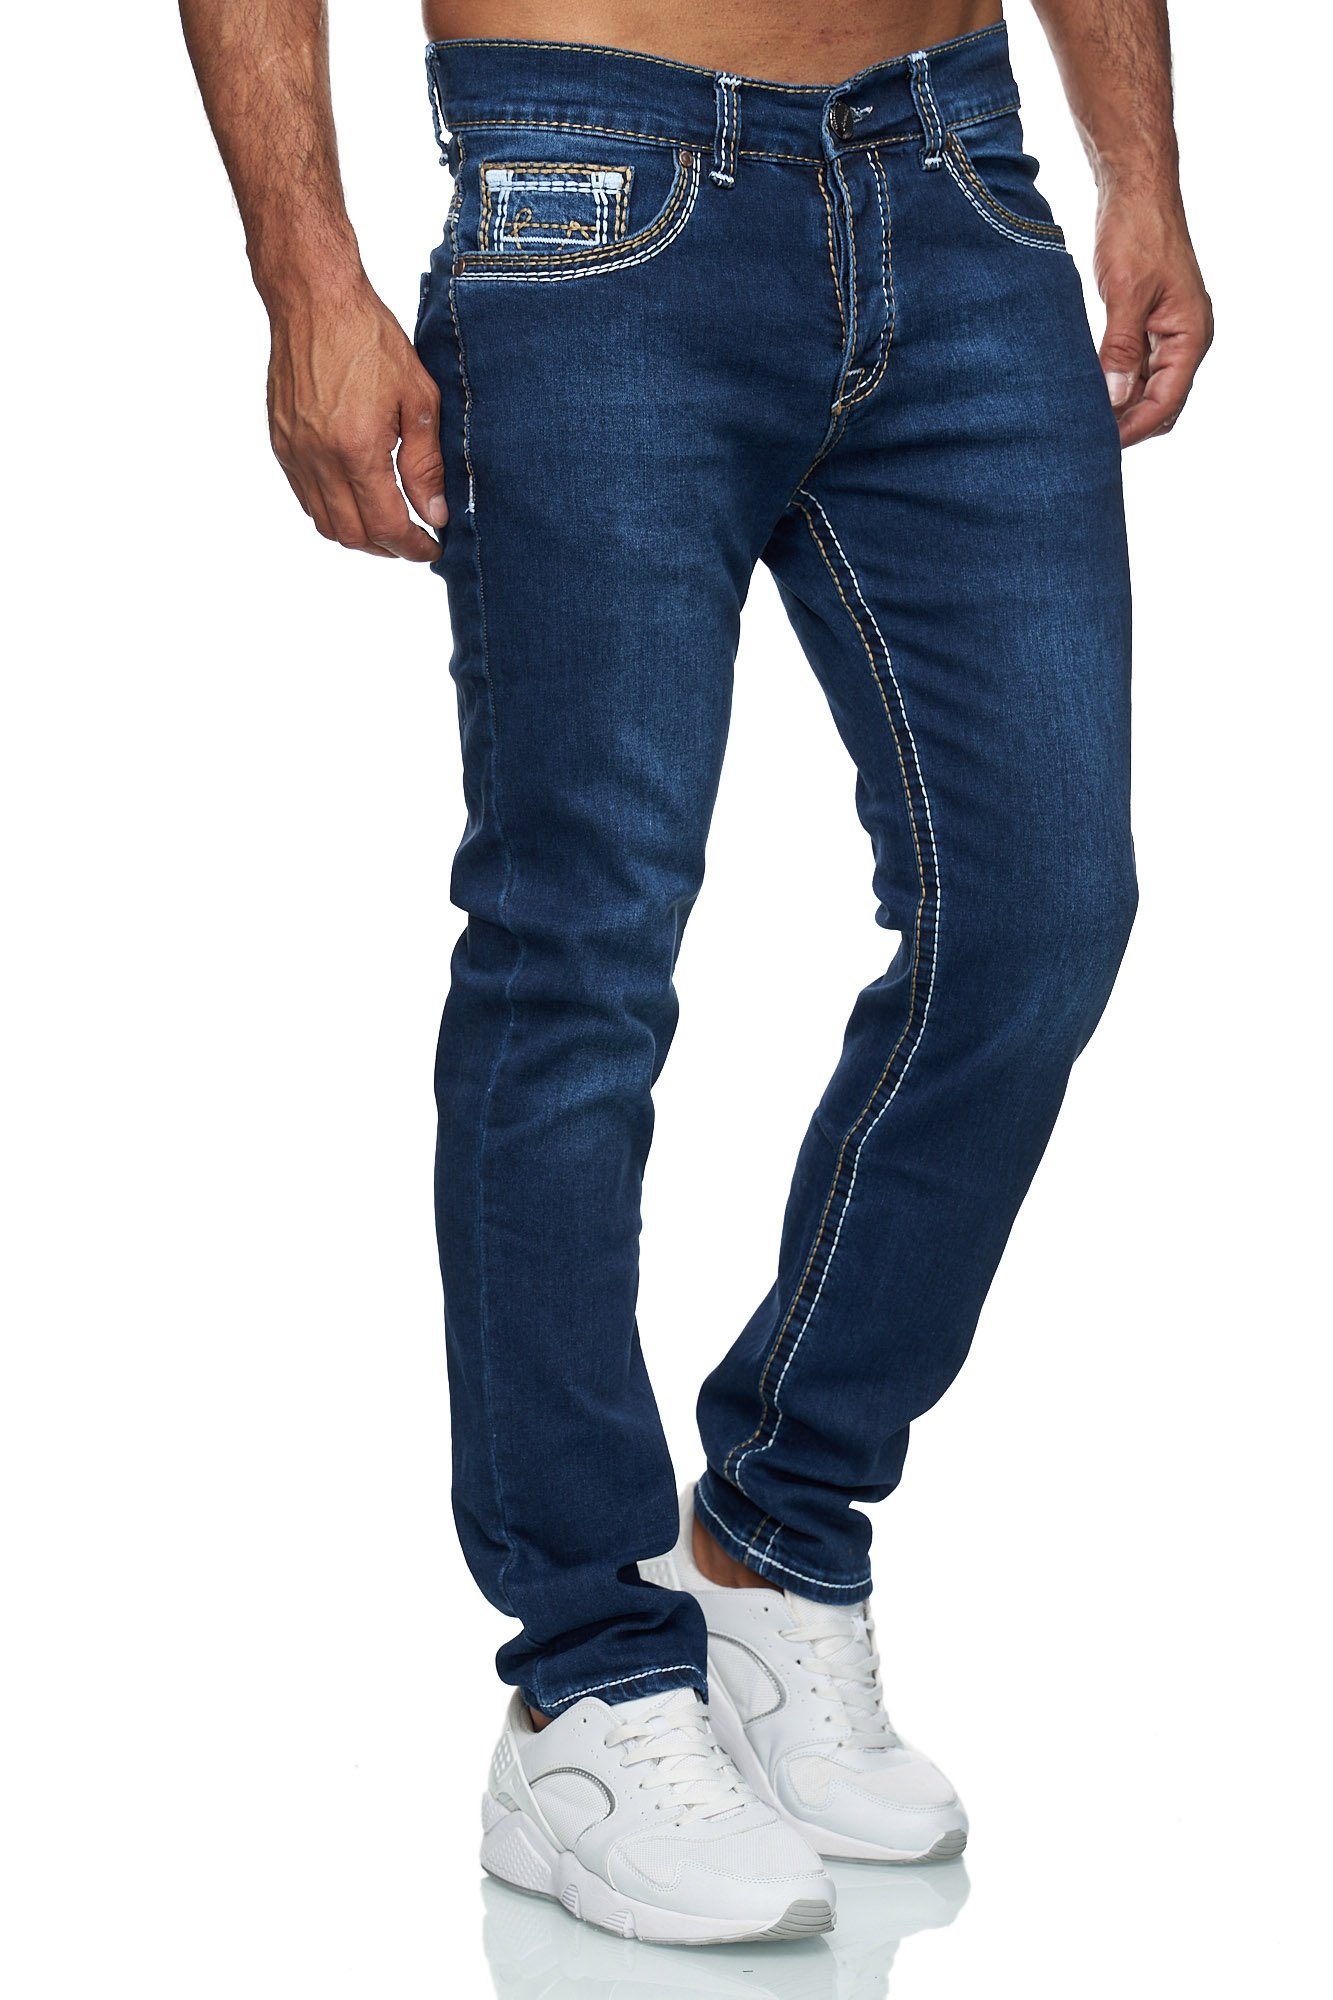 wirklich mögen Baxboy Regular-fit-Jeans Herren Dicke Neon-Naht 9574 Denim Stonewashed Stretch Straight DunkelBlau Jeans Fit